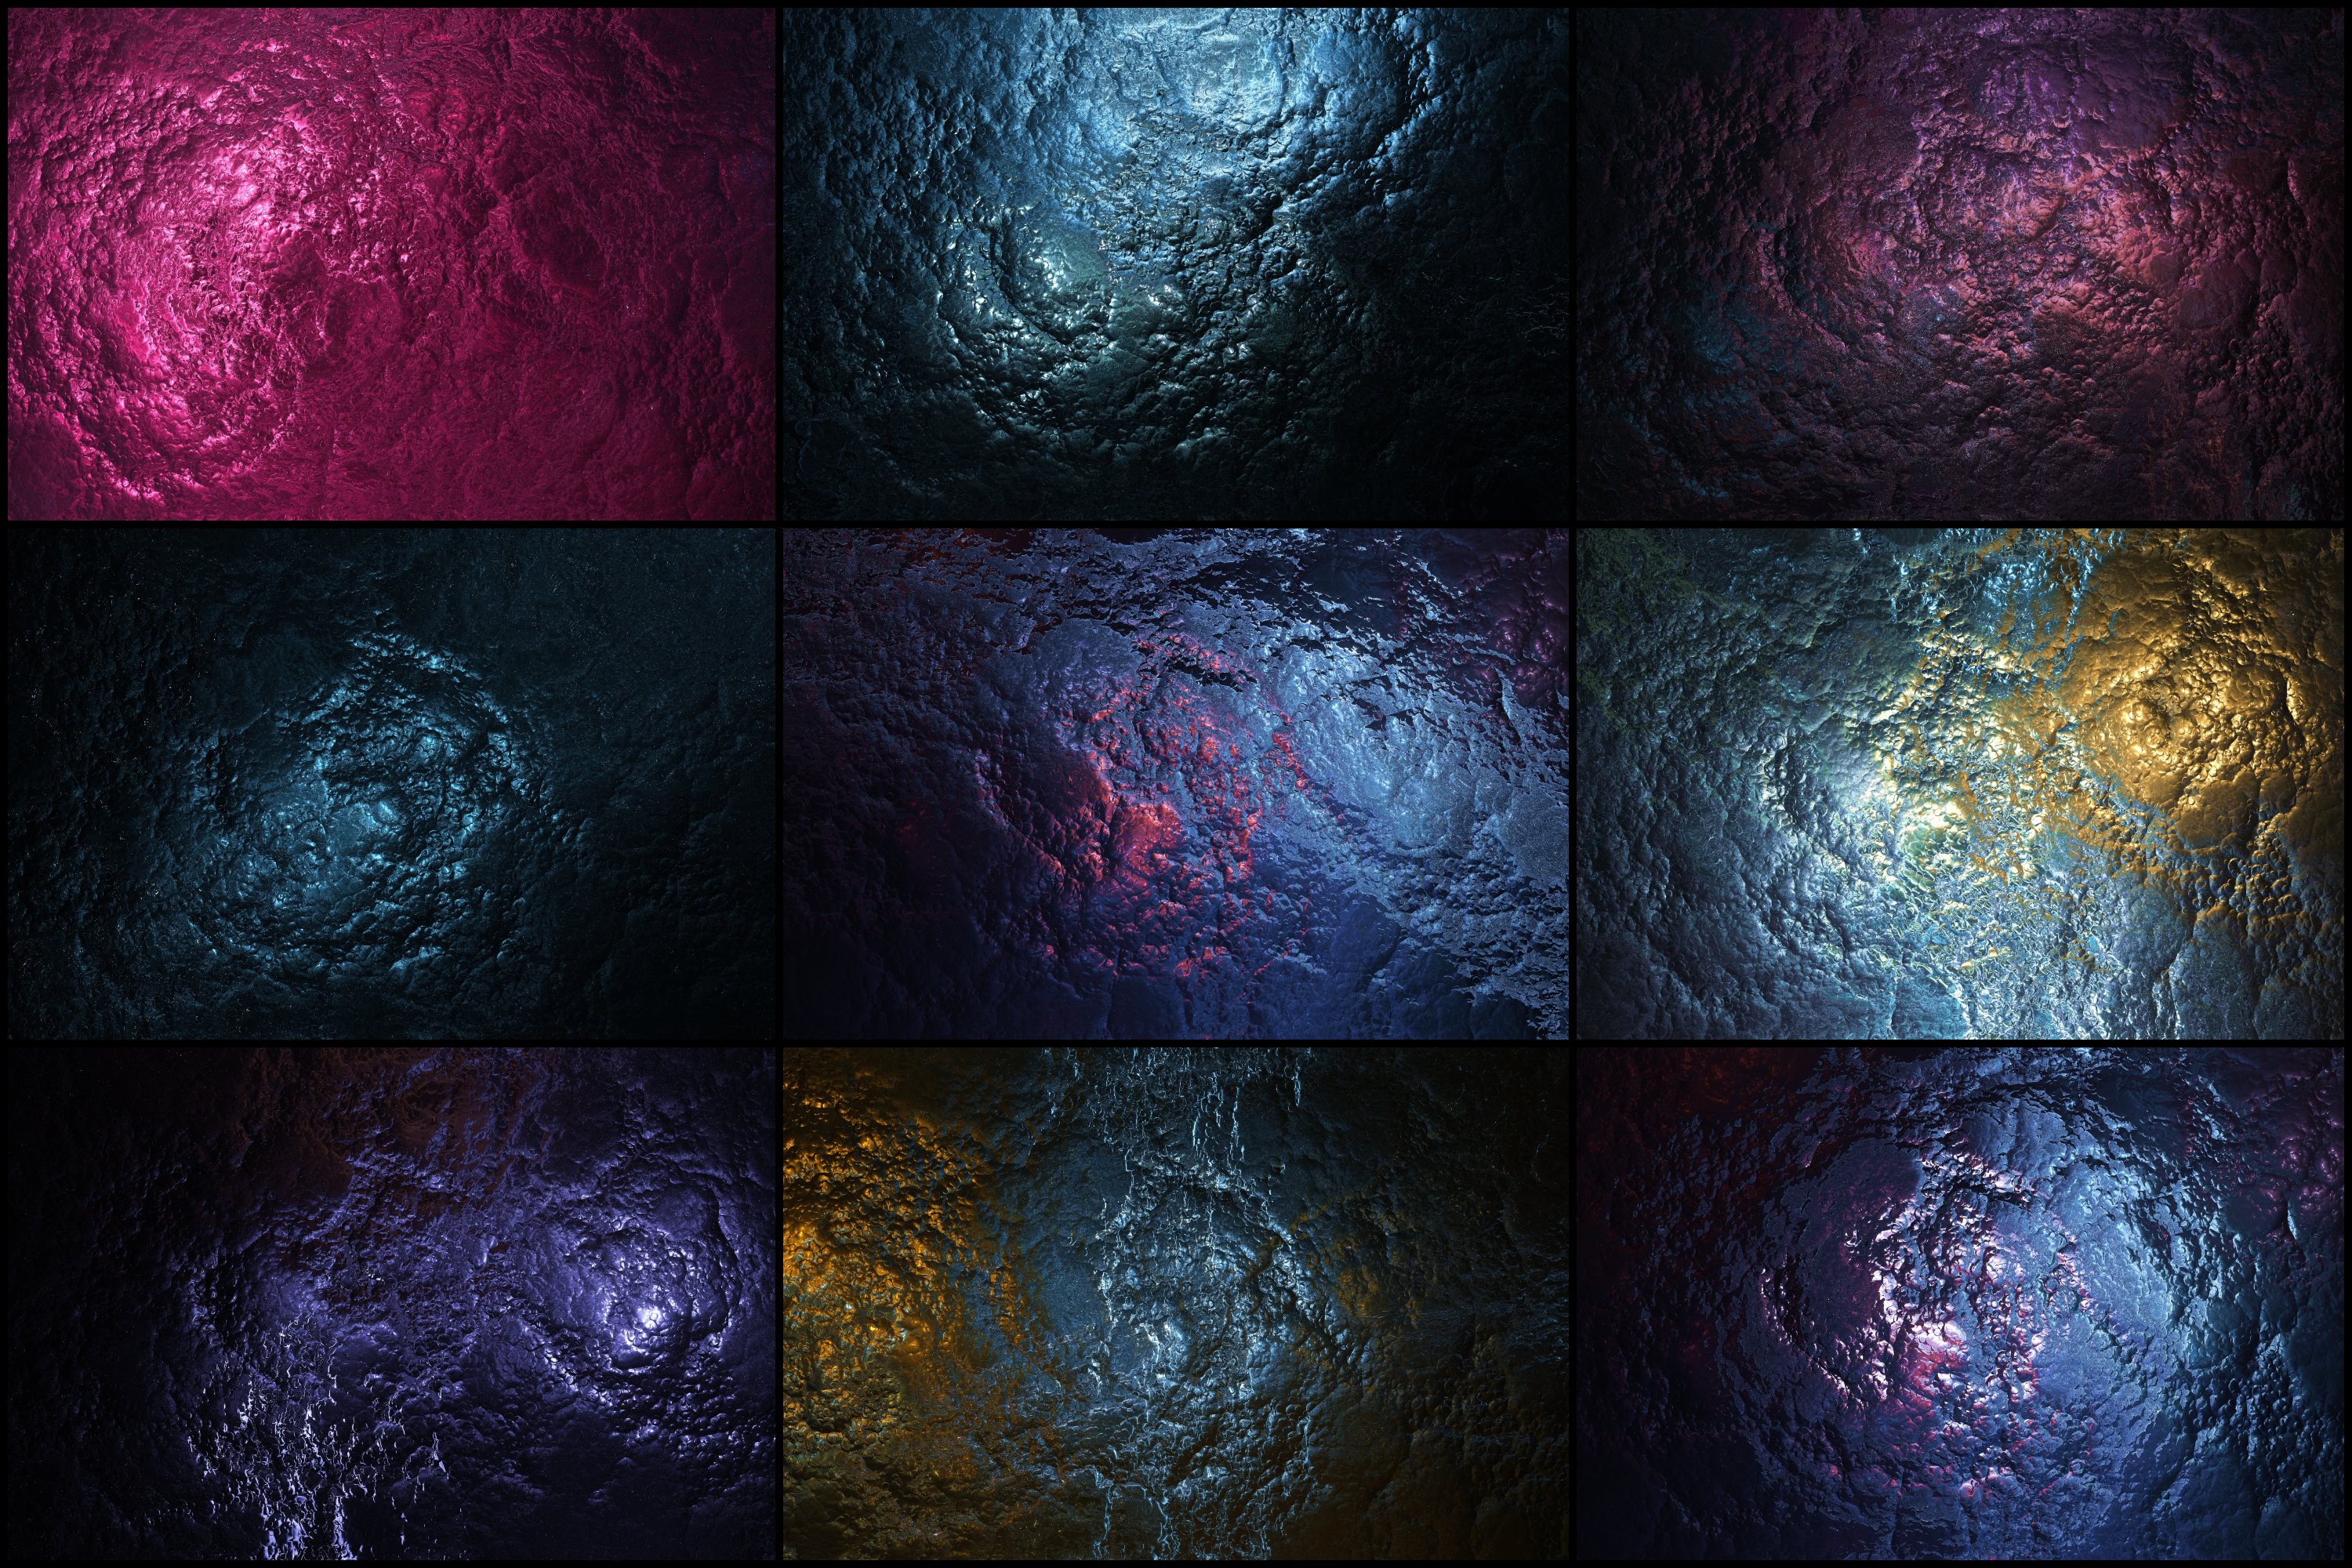 50个抽象流体形状高清背景图素材v2 50 Abstract Fluid Backgrounds – Vol. 2